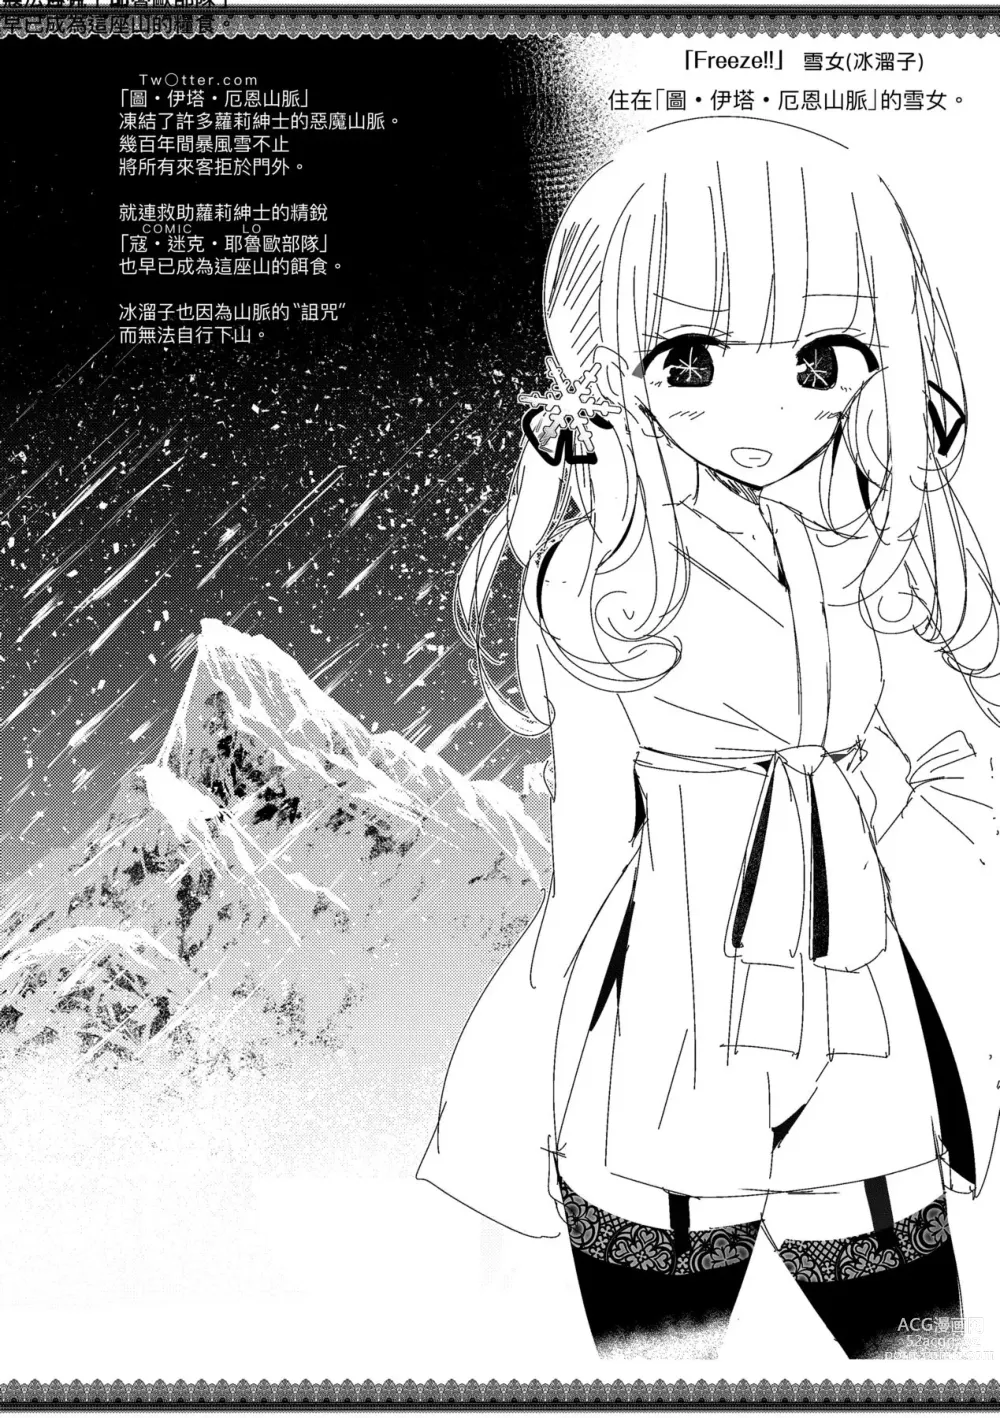 Page 162 of manga 年上的少女你也很喜歡吧? (decensored)